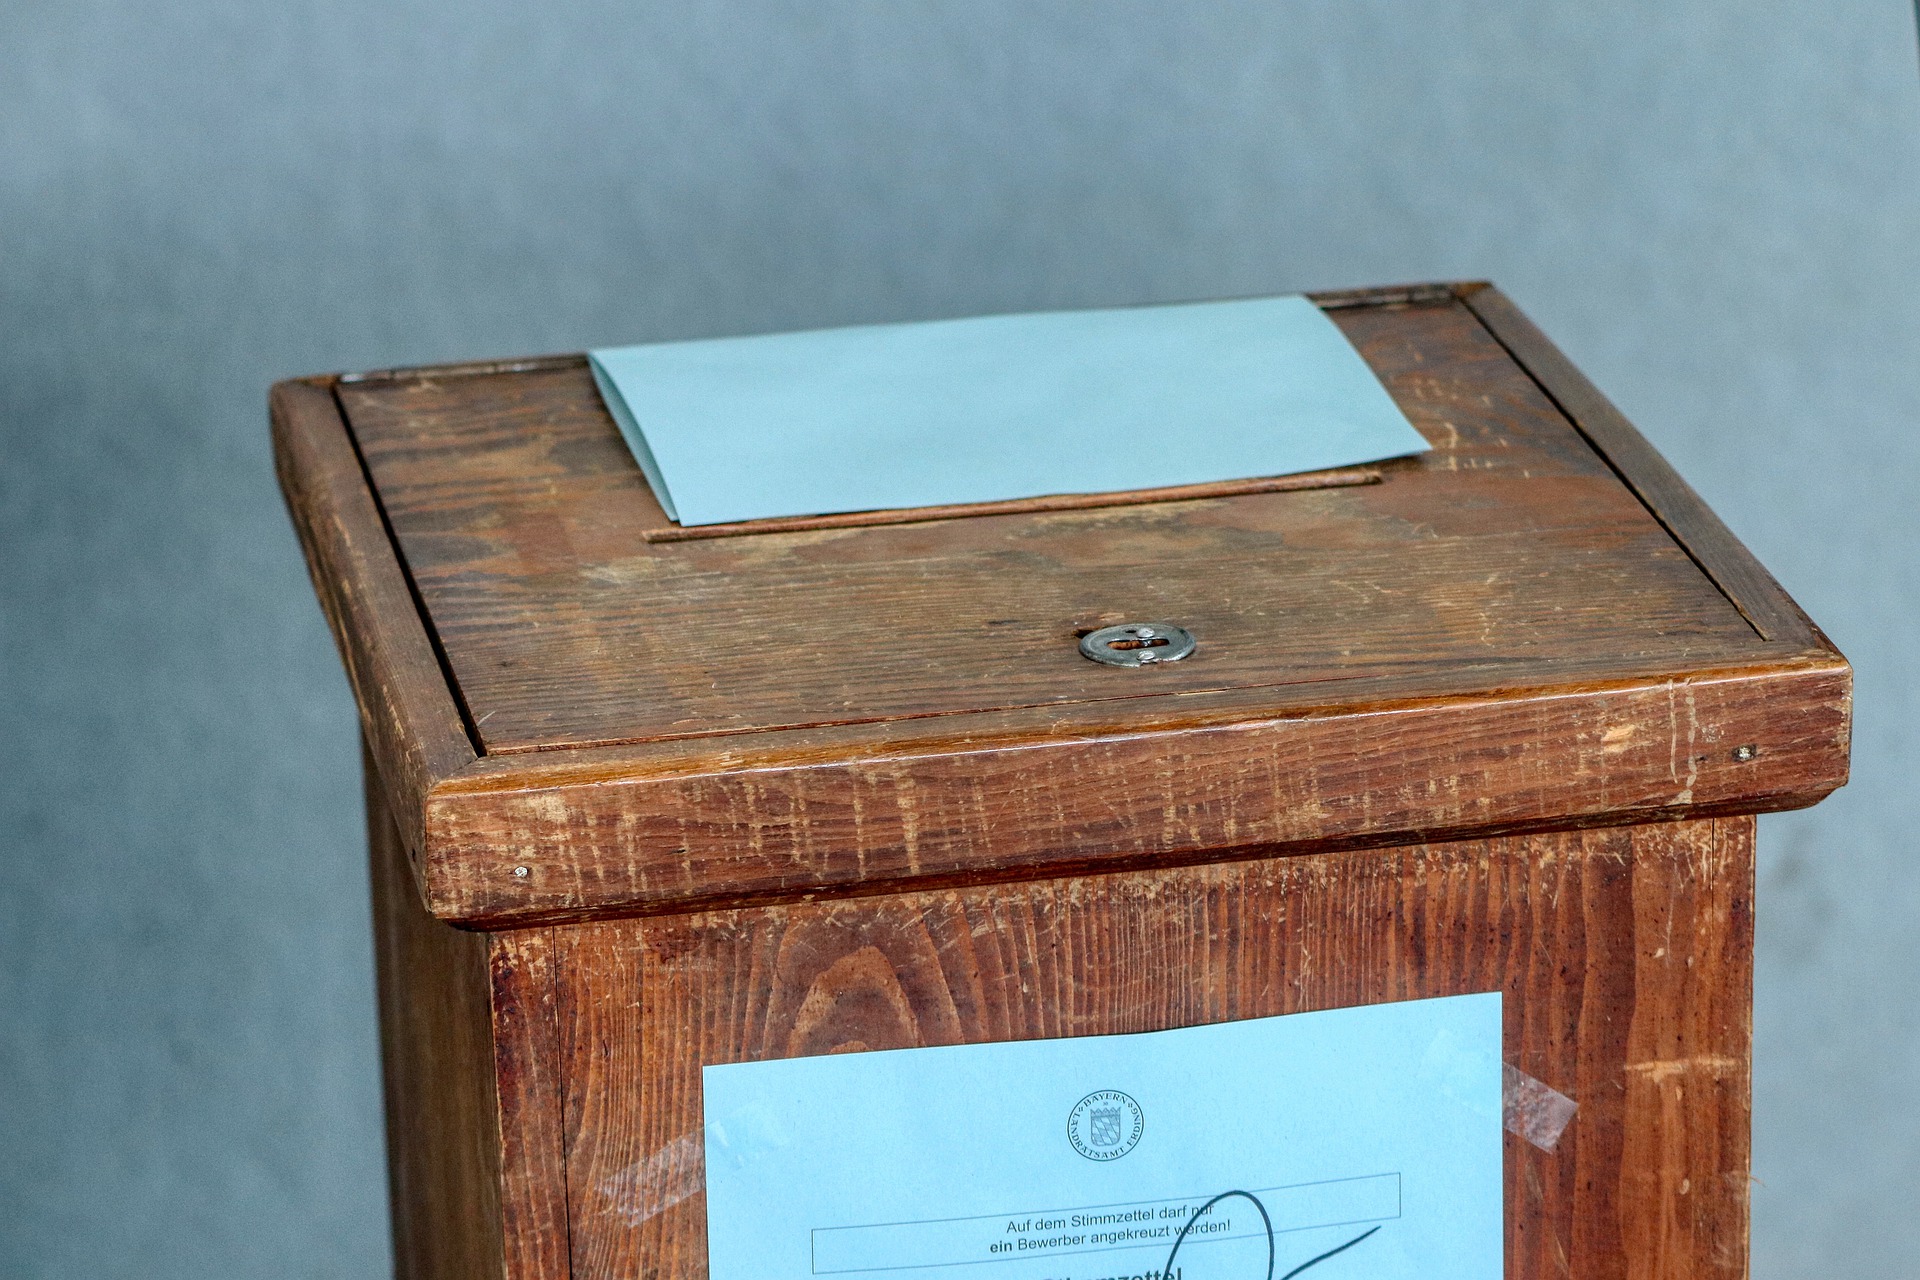 Alegeri parlamentare pe 6 decembrie. Registrul Electoral îți spune secția arondată pentru votare